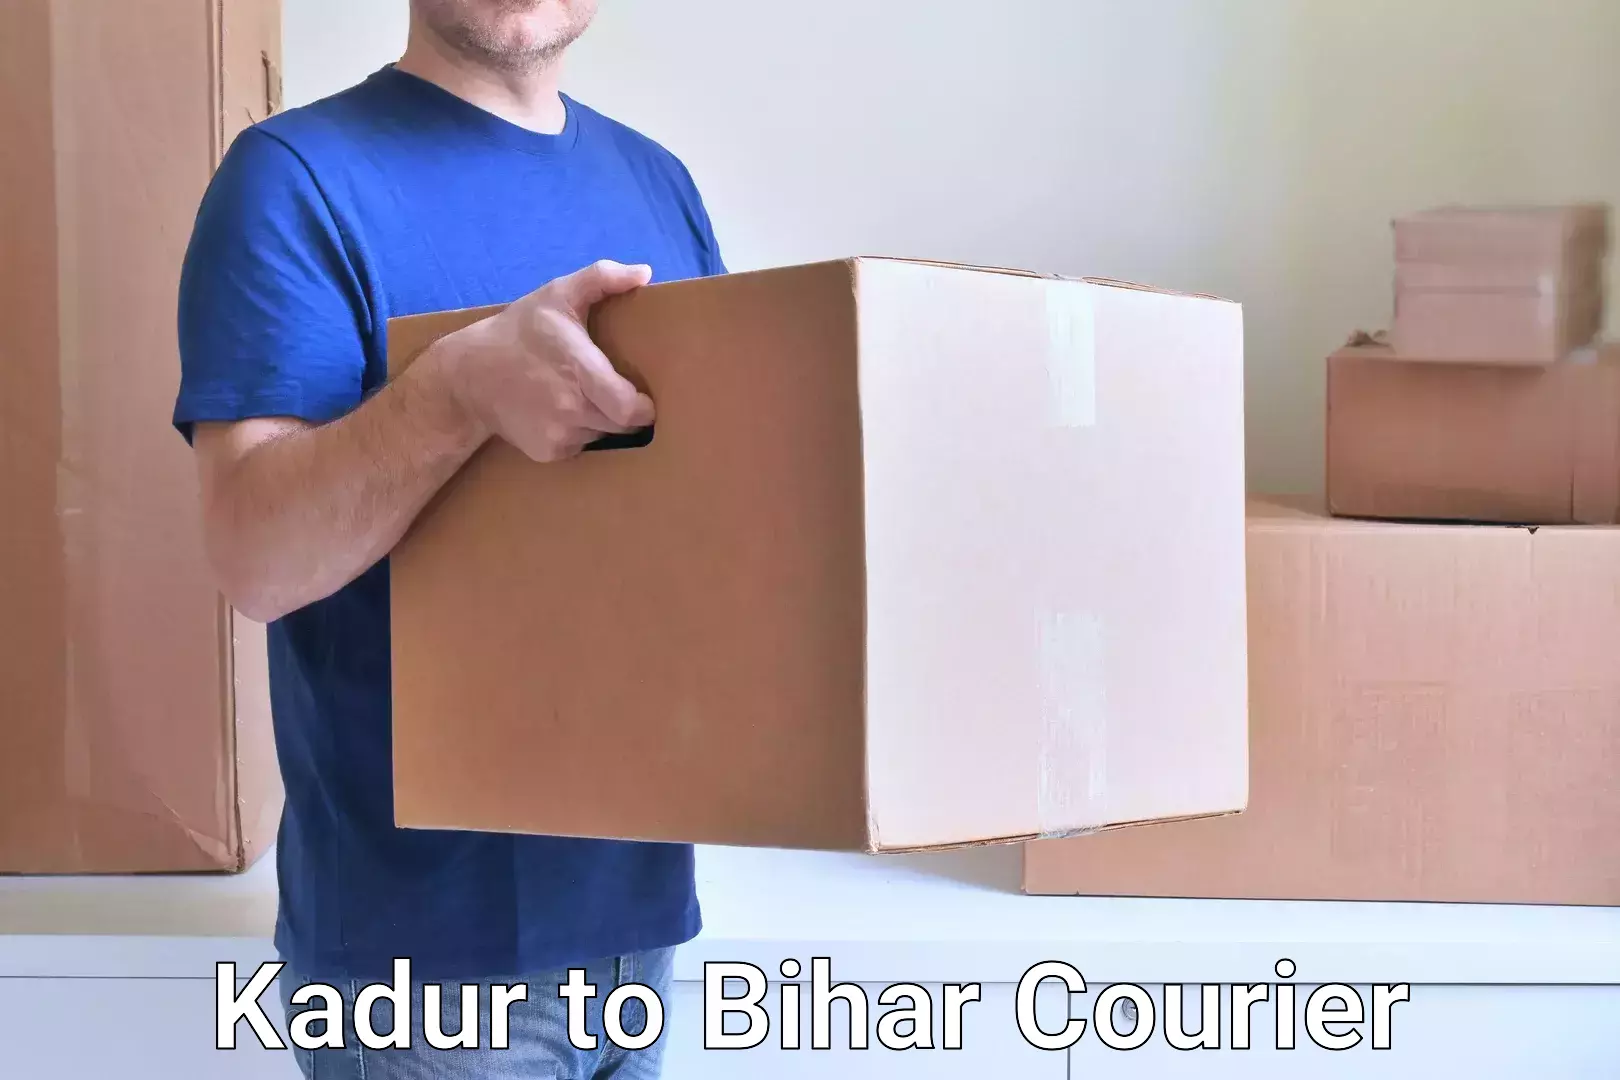 Advanced shipping technology Kadur to Bihar